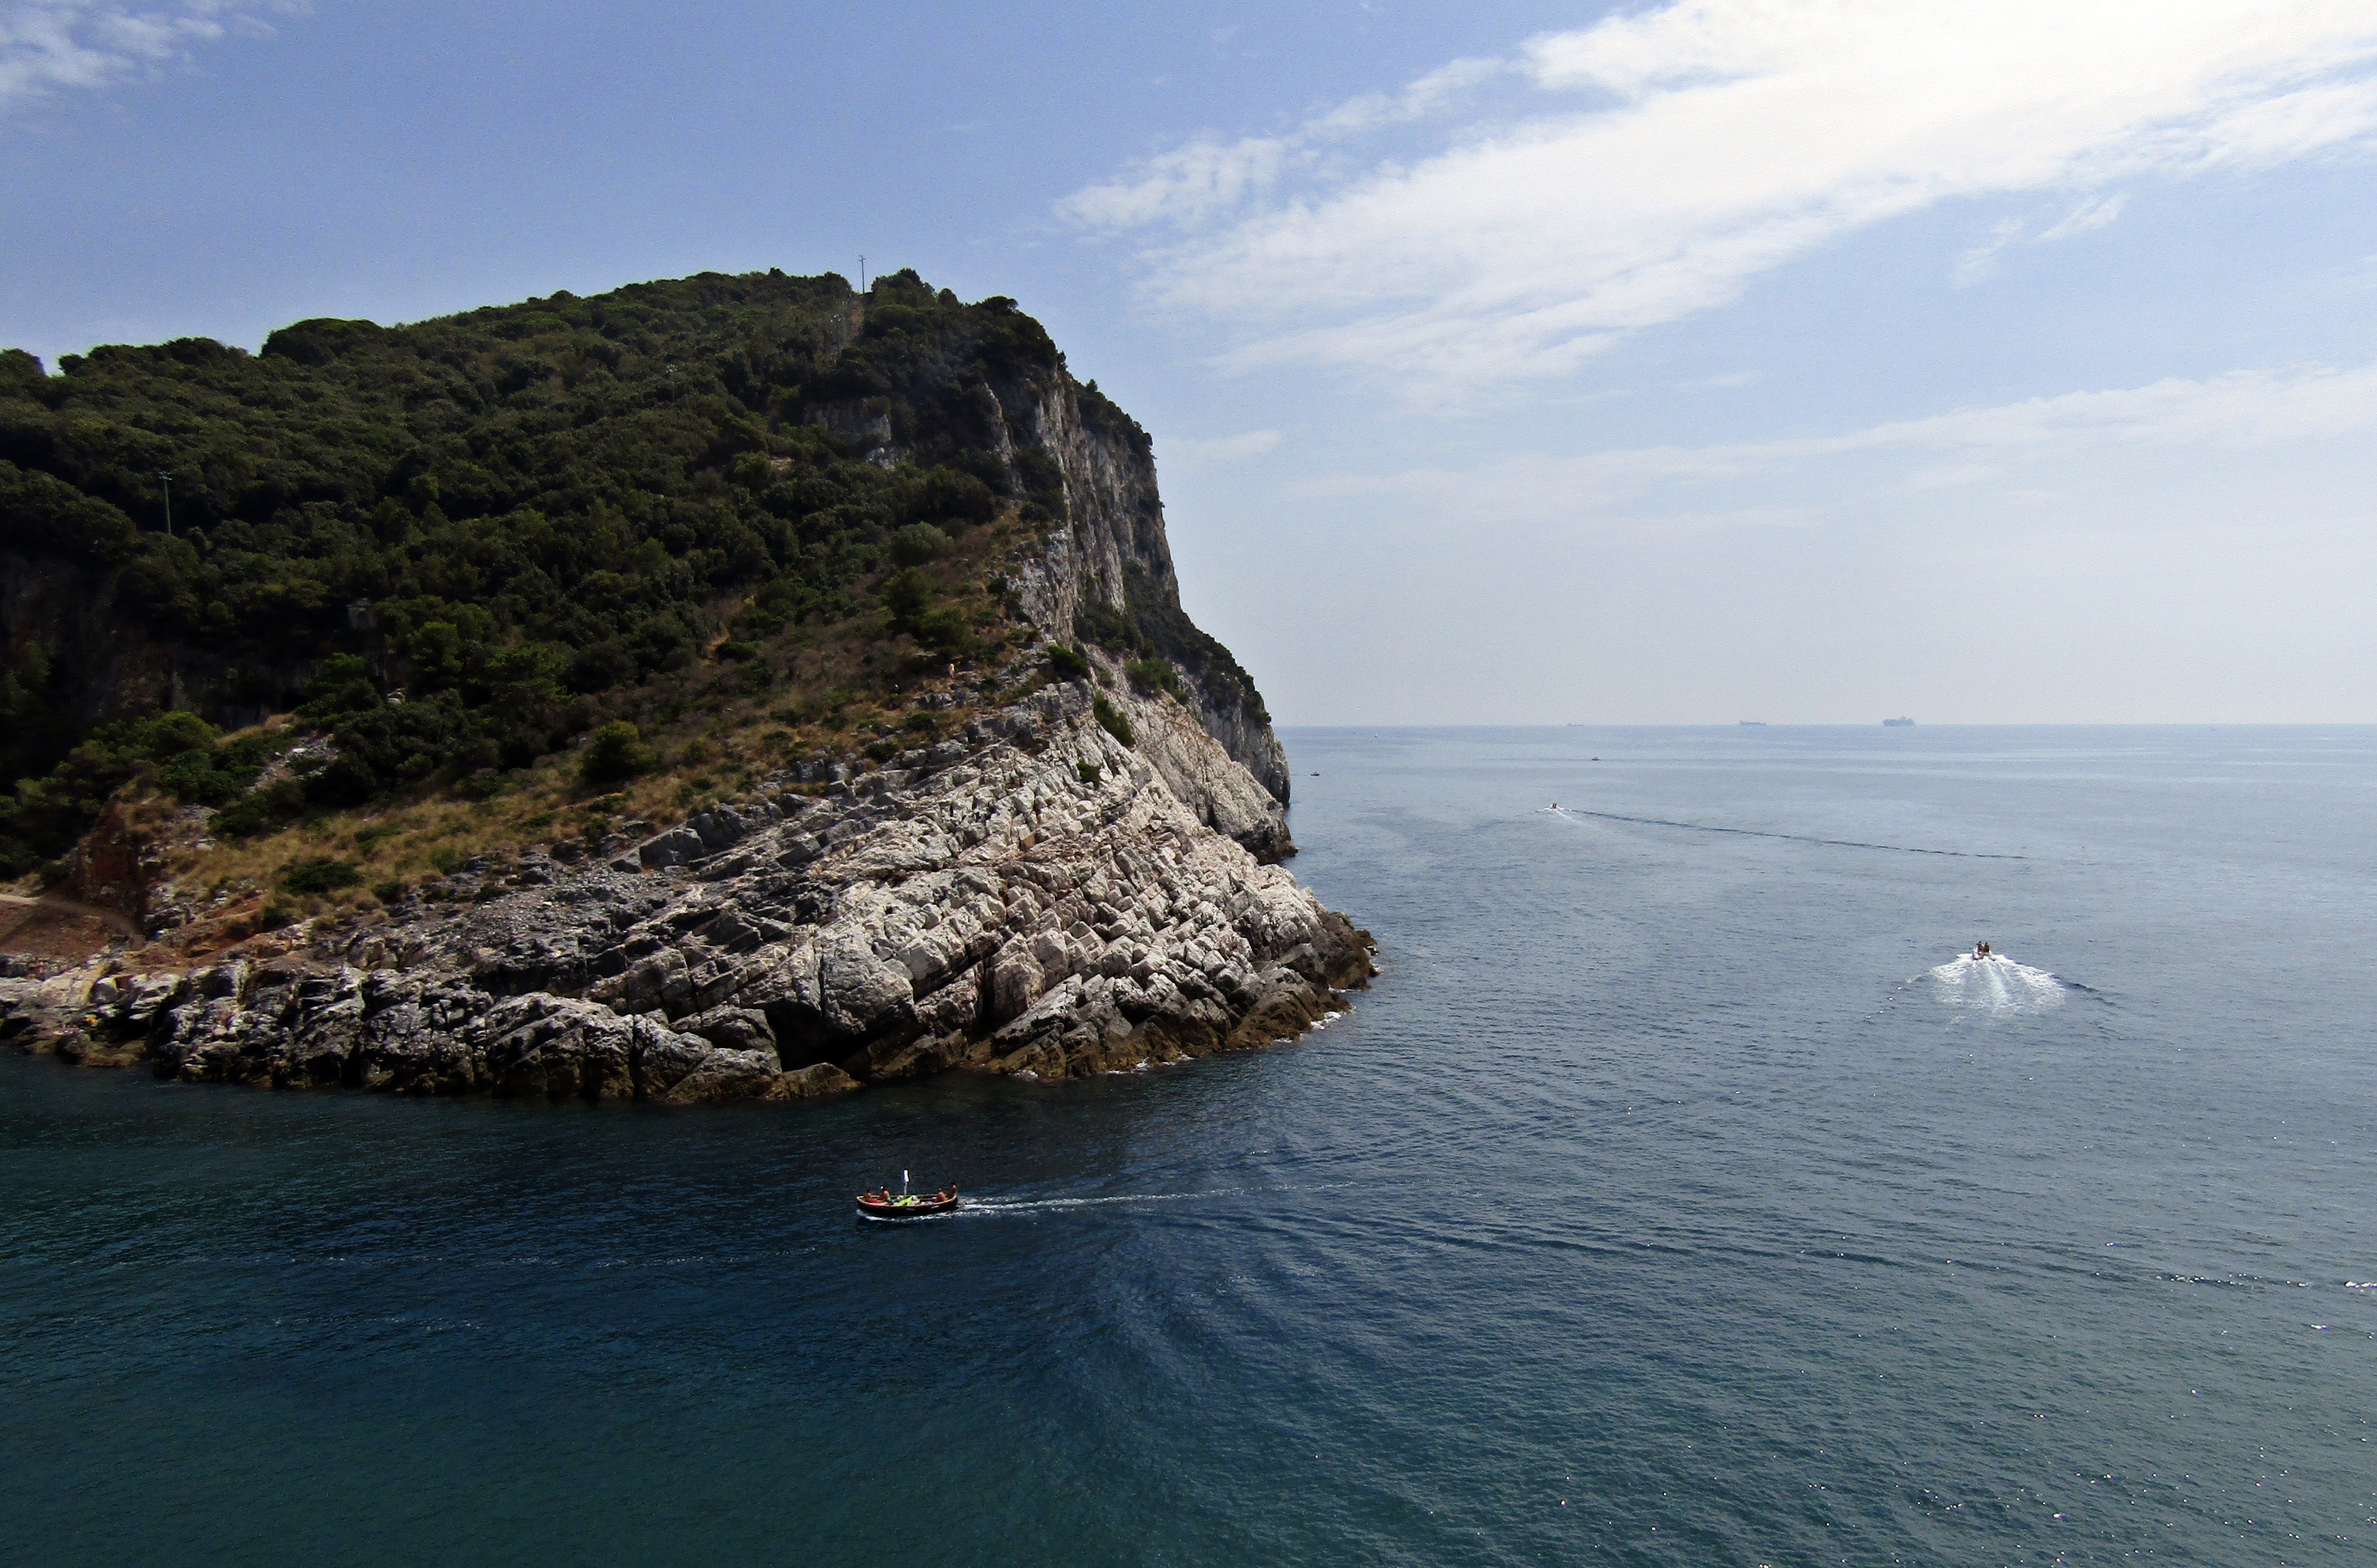 Cesare Charter Portofino - Tour Porto Venere and Palmaria Island